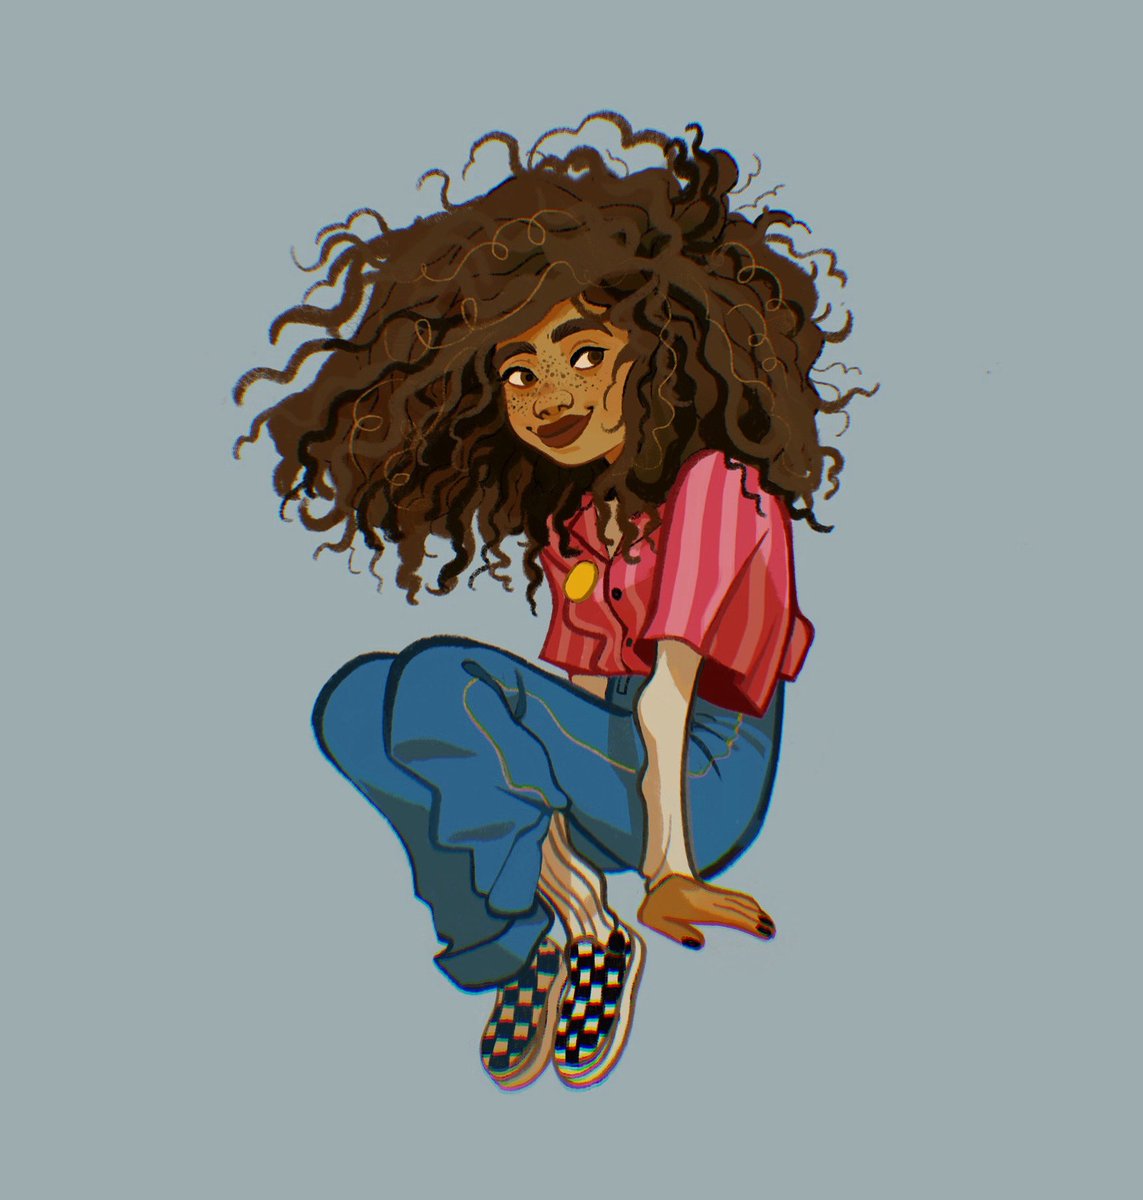 solo 1girl dark skin pants dark-skinned female shirt brown hair  illustration images